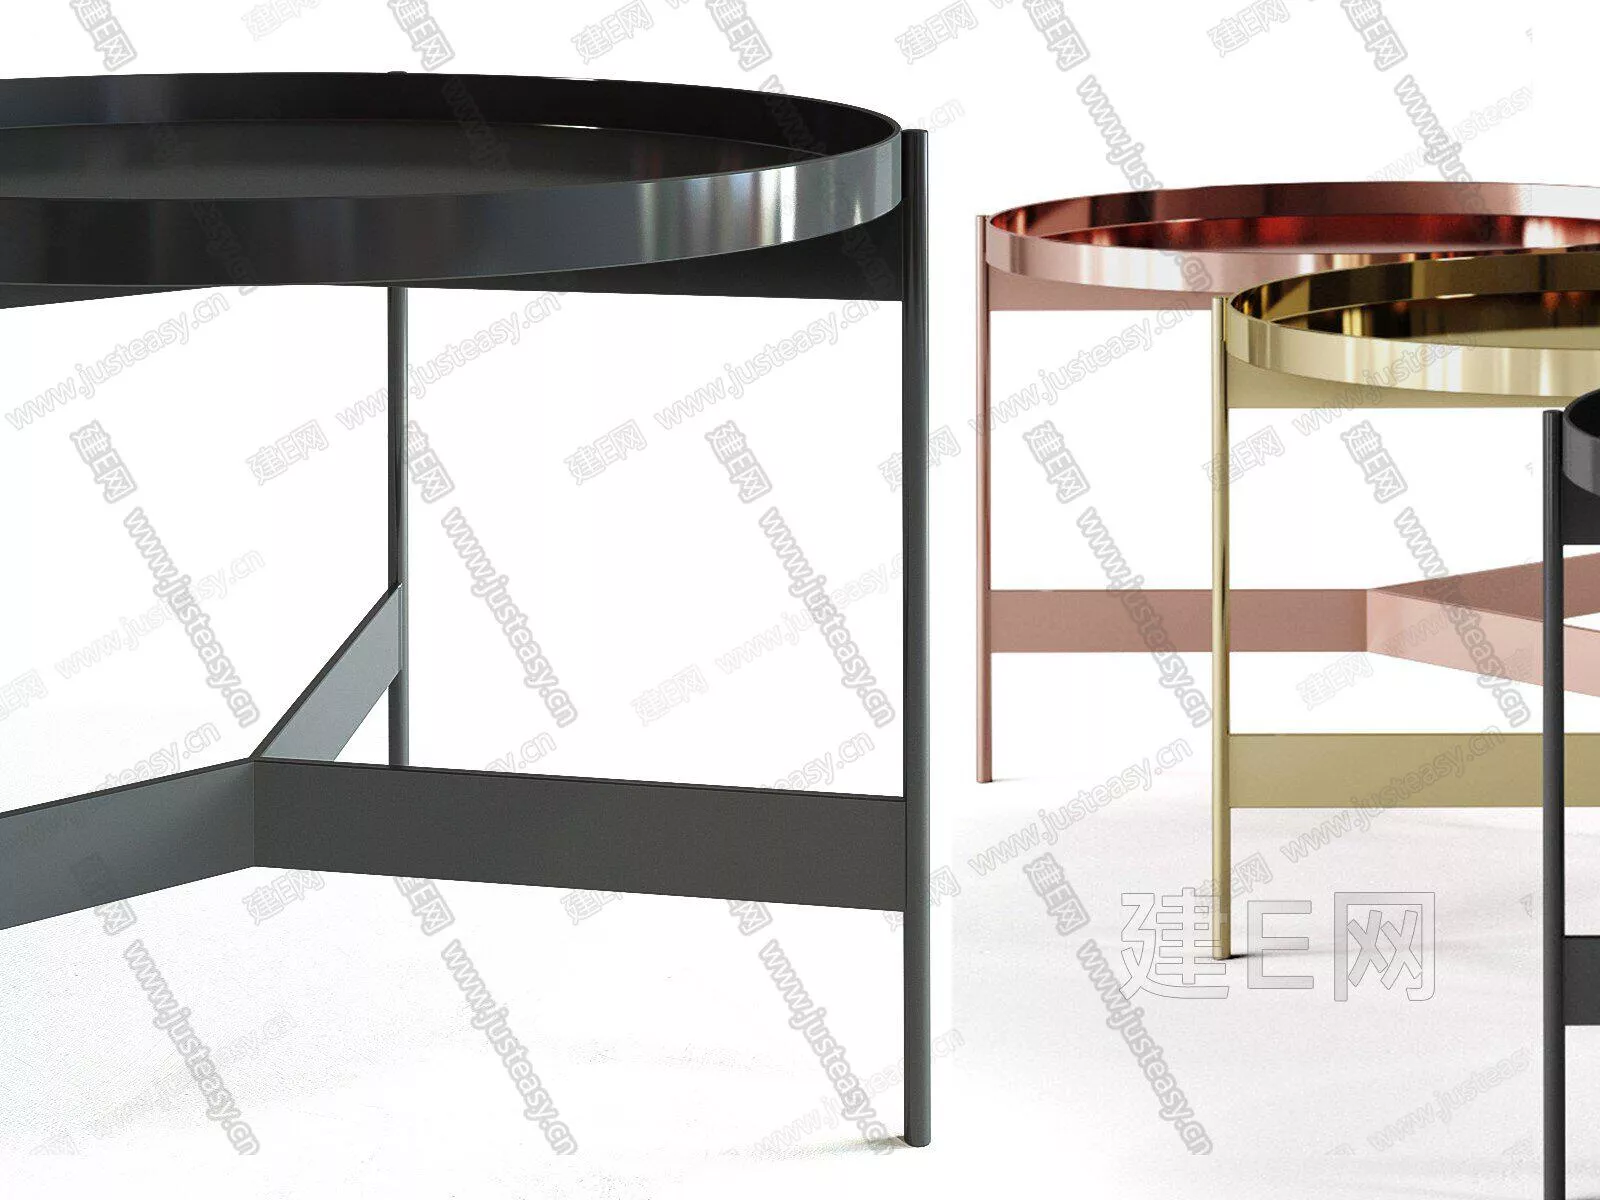 MODERN SIDE TABLE - SKETCHUP 3D MODEL - ENSCAPE - 110644546